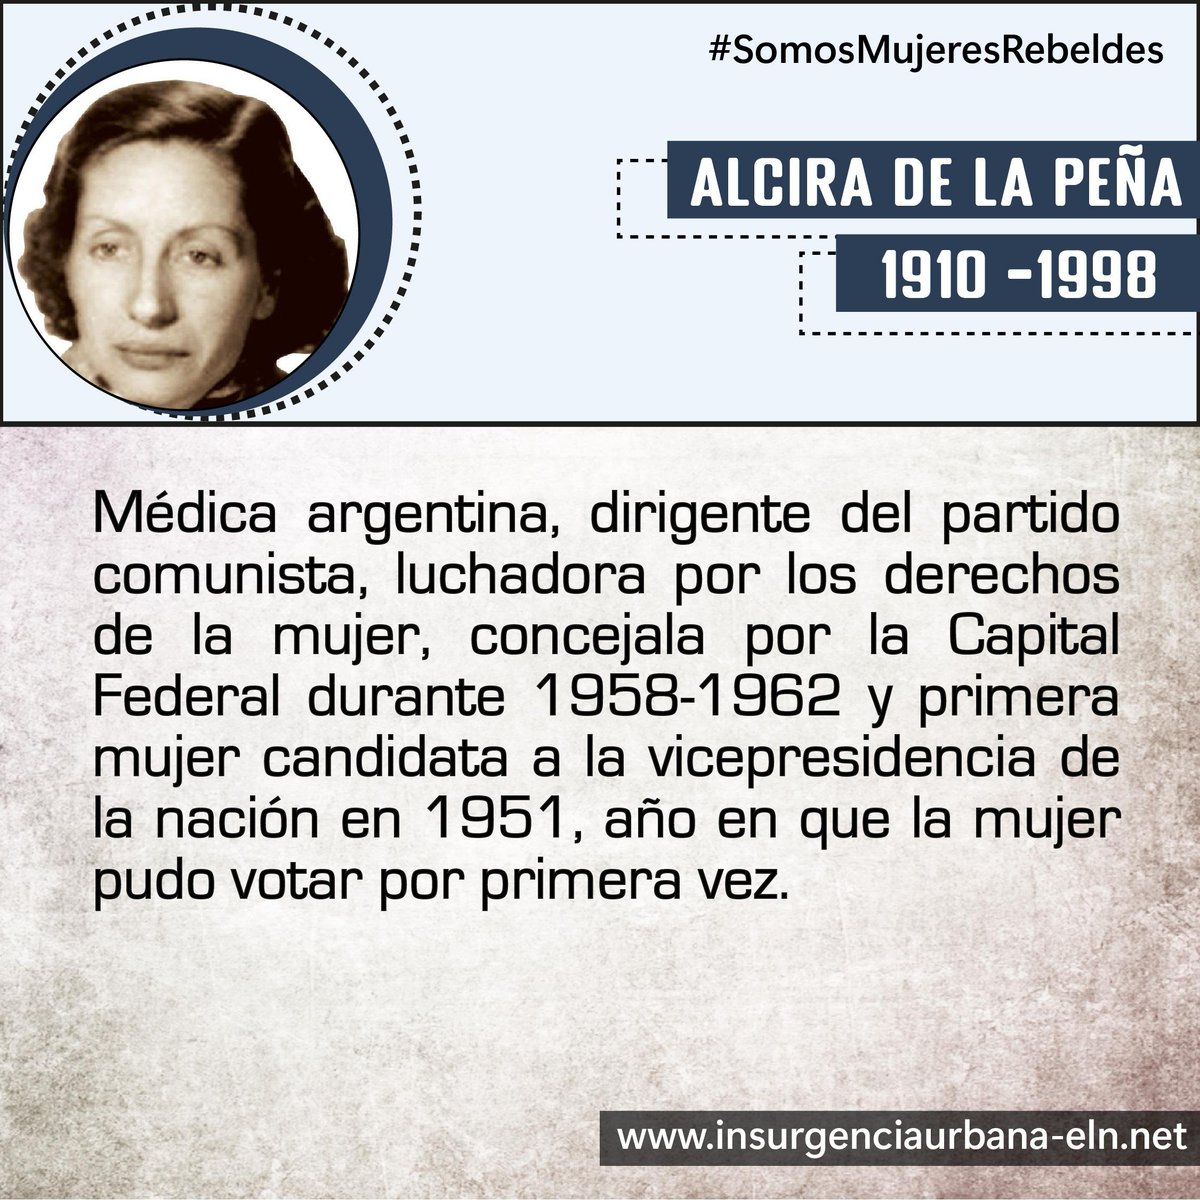 #SomosMujeresRebeldes

ALCIRA DE LA PEÑA
🇦🇷 Luchadora por los derechos de la mujer

#SiempreJuntoAlPueblo
#InsurgenciaUrbana
#ELN60años